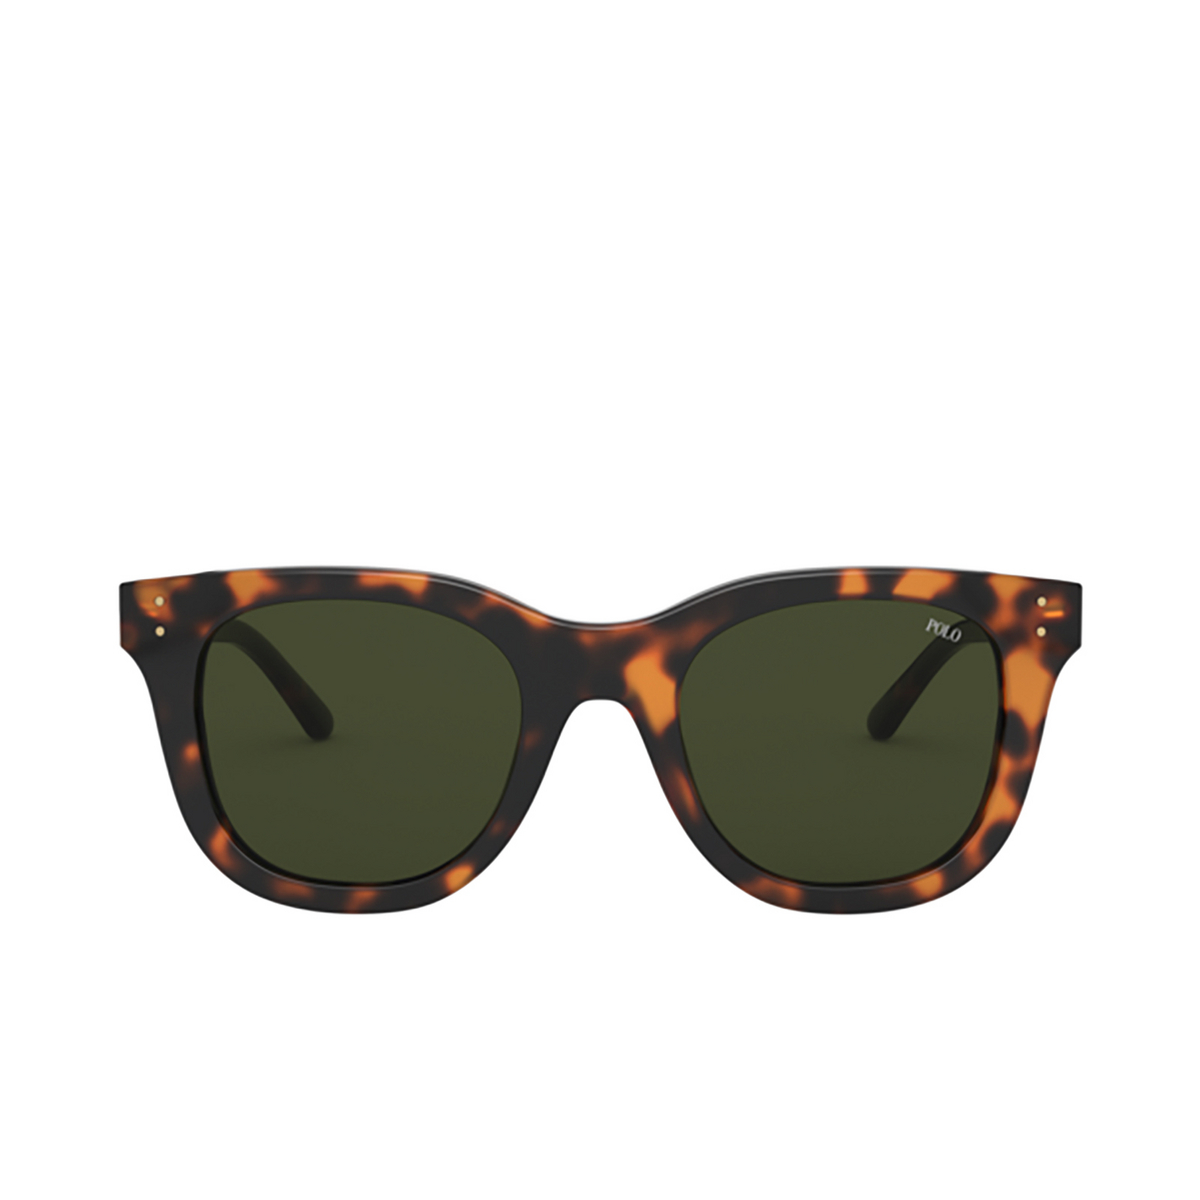 Polo Ralph Lauren® Square Sunglasses: PH4160 color Shiny Jc Tortoise 530371 - front view.